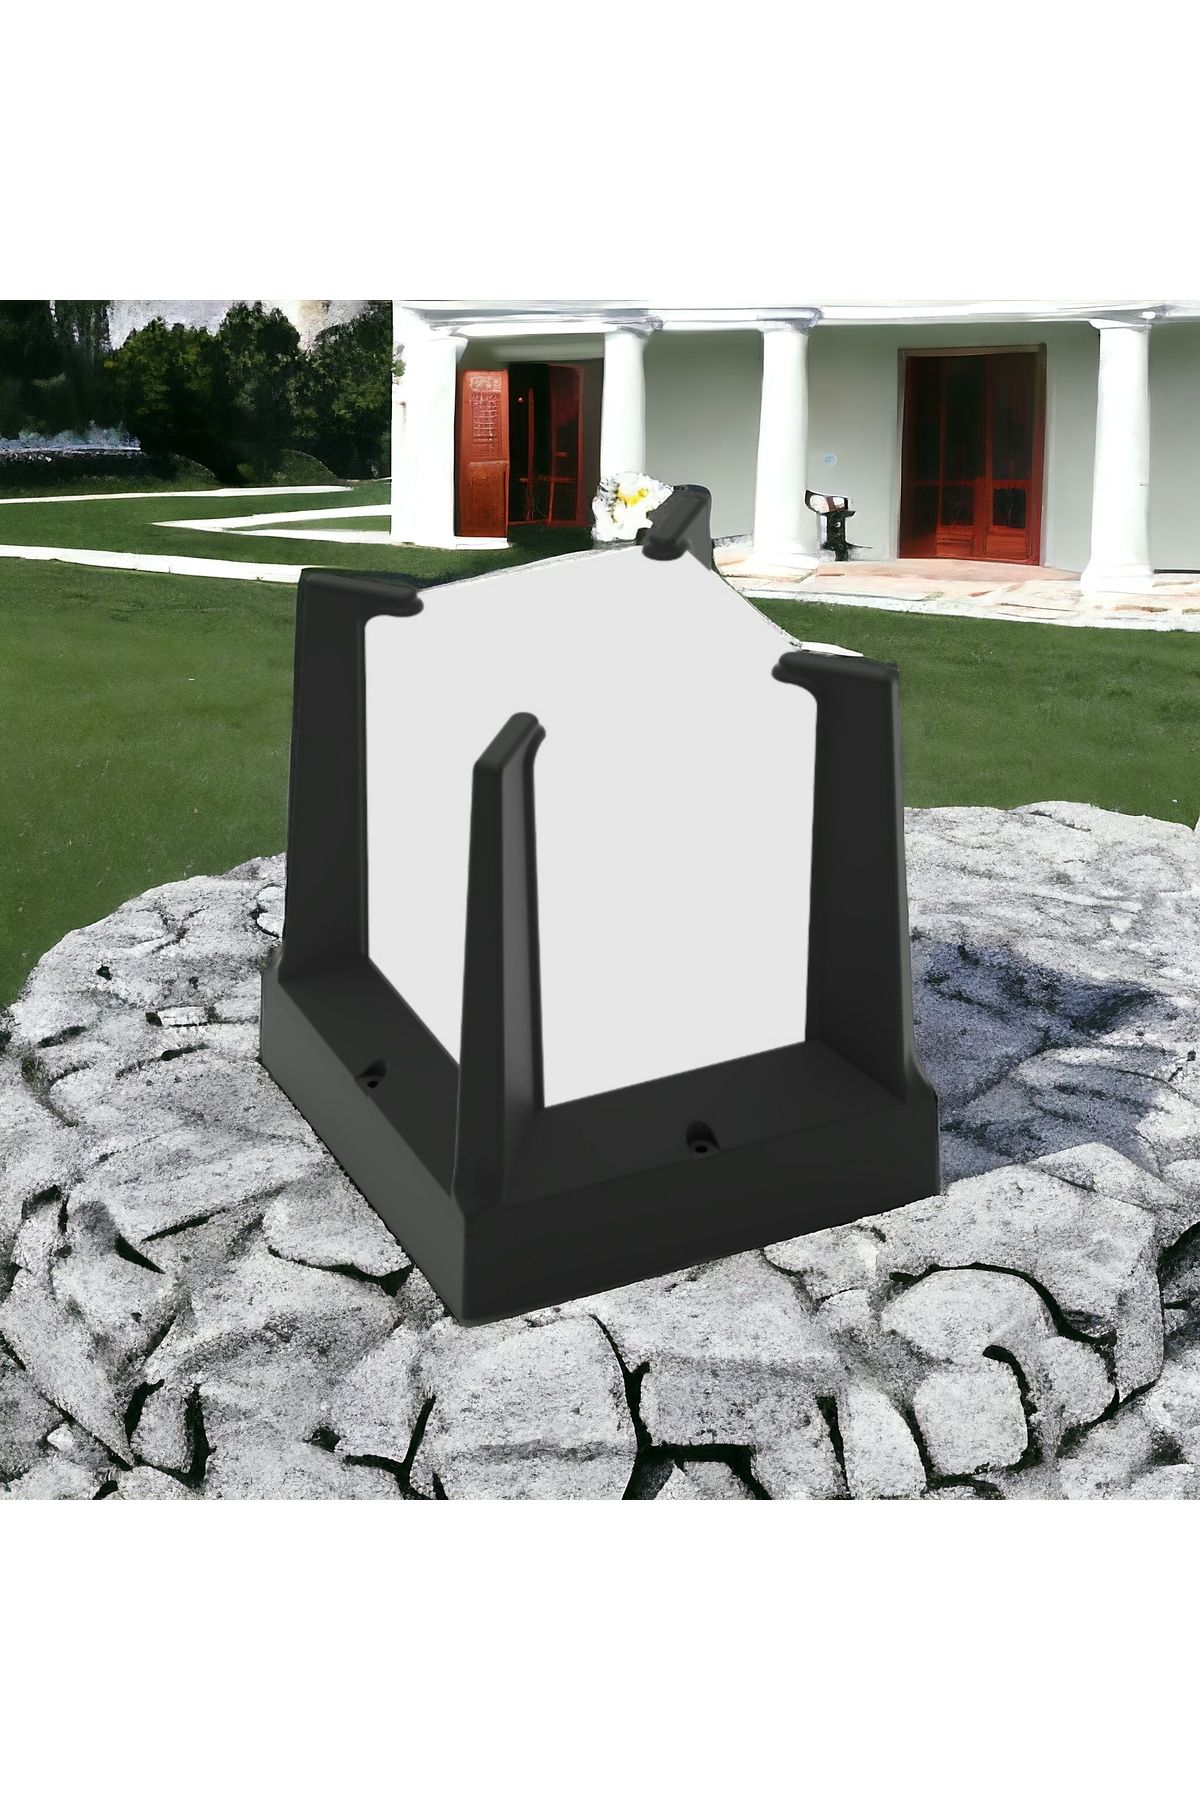 fullreyon Beyaz Işık Ampul Dahil E27 Duy Bahçe Duvar Armatürü, Modern Yeni Tasarım Dekoratif Set Üstü Aplik